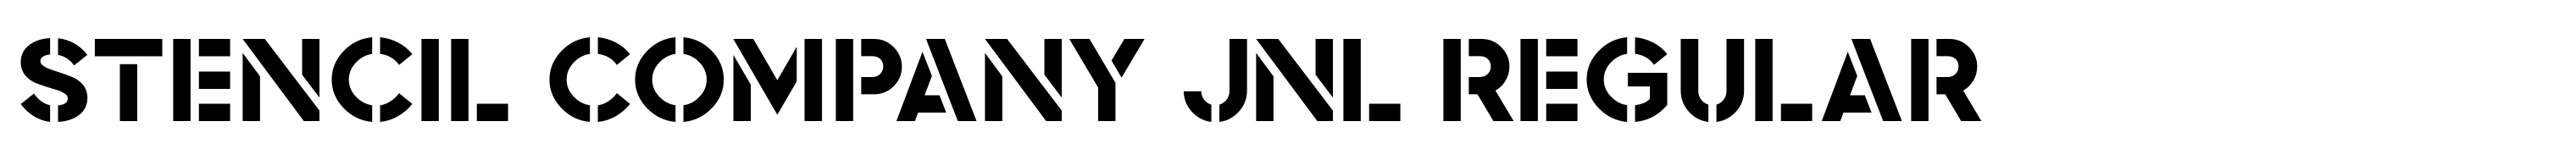 Stencil Company JNL Regular